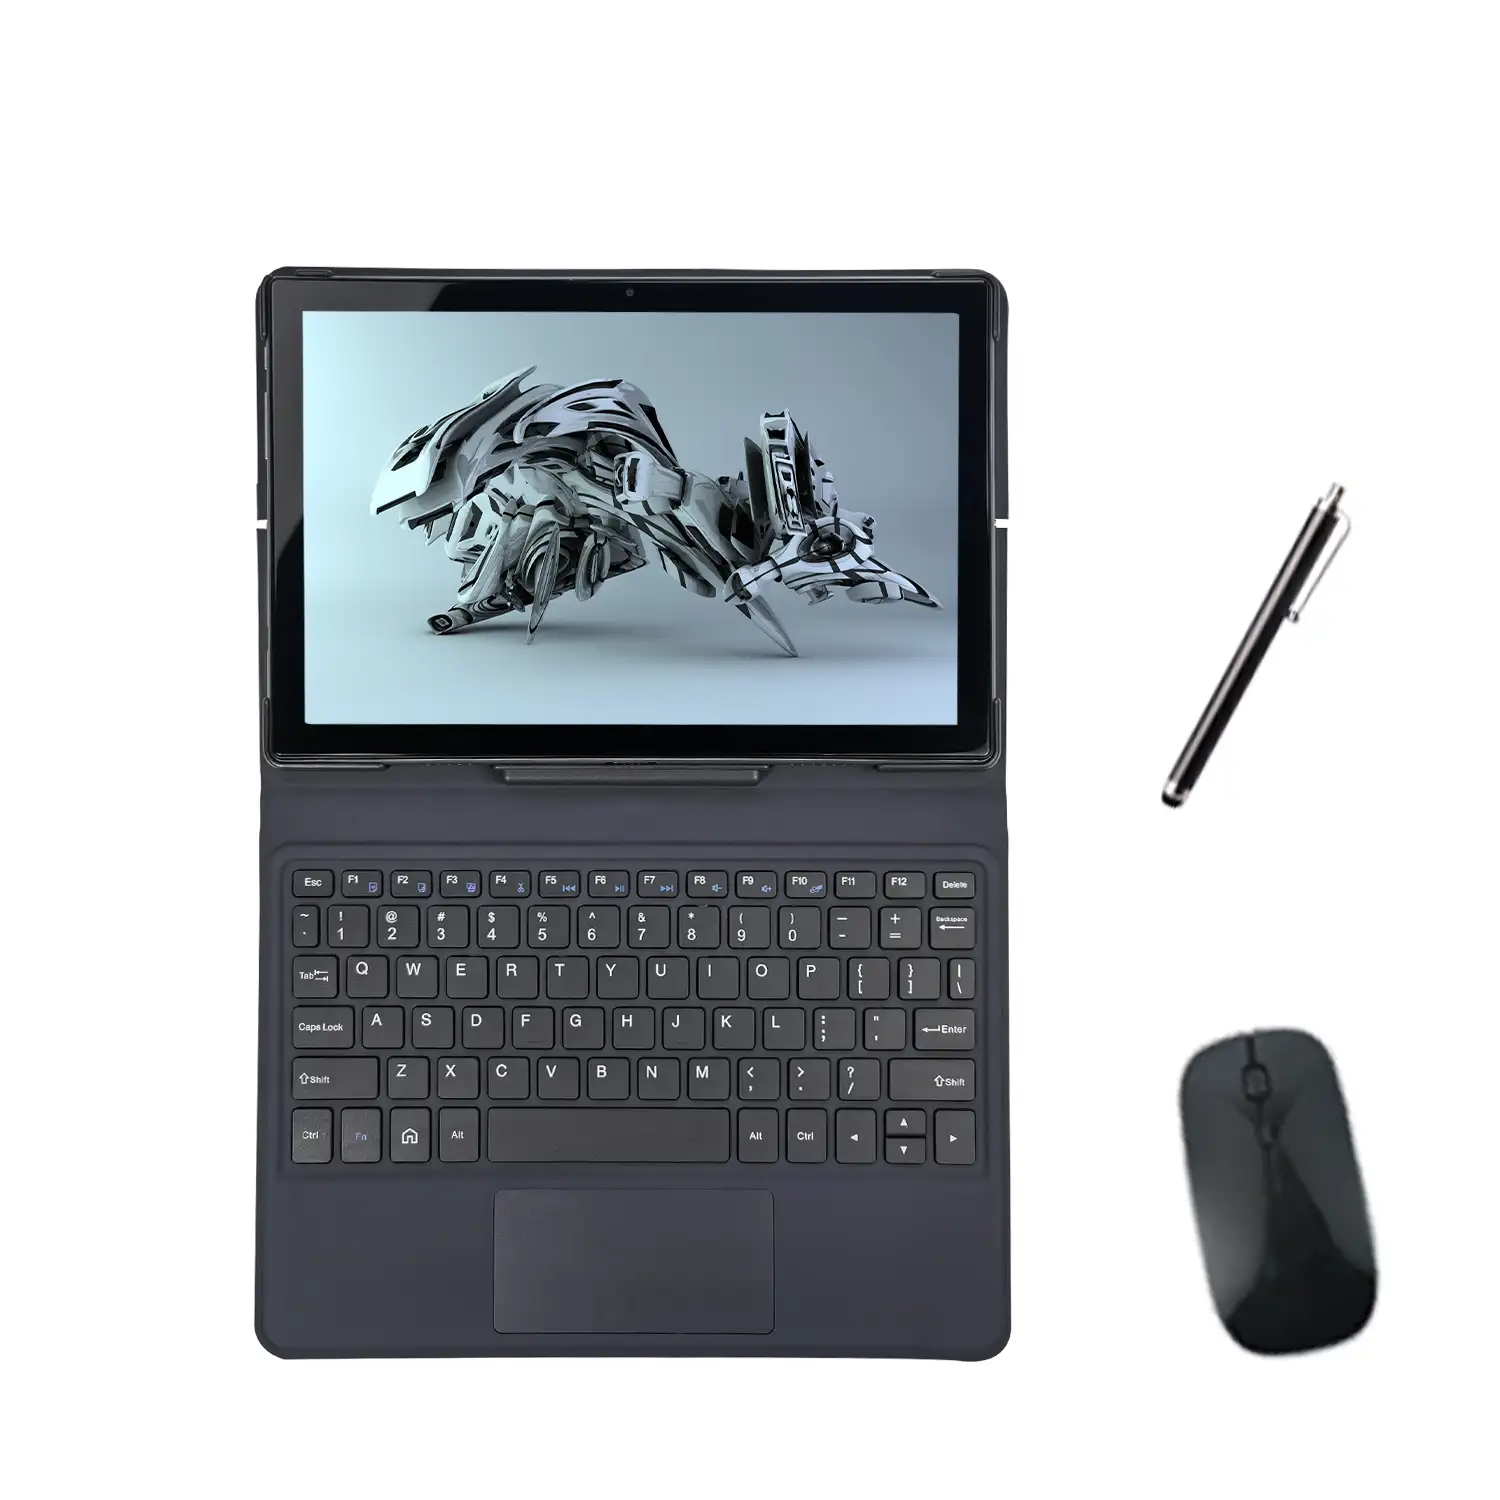 새로운 안드로이드 11 LTE 4g 태블릿 pc 10 인치 옥타 코어 1.6Ghz 태블릿 4gb 64gb 2 in 1 태블릿 pc 키보드 및 마우스 및 펜